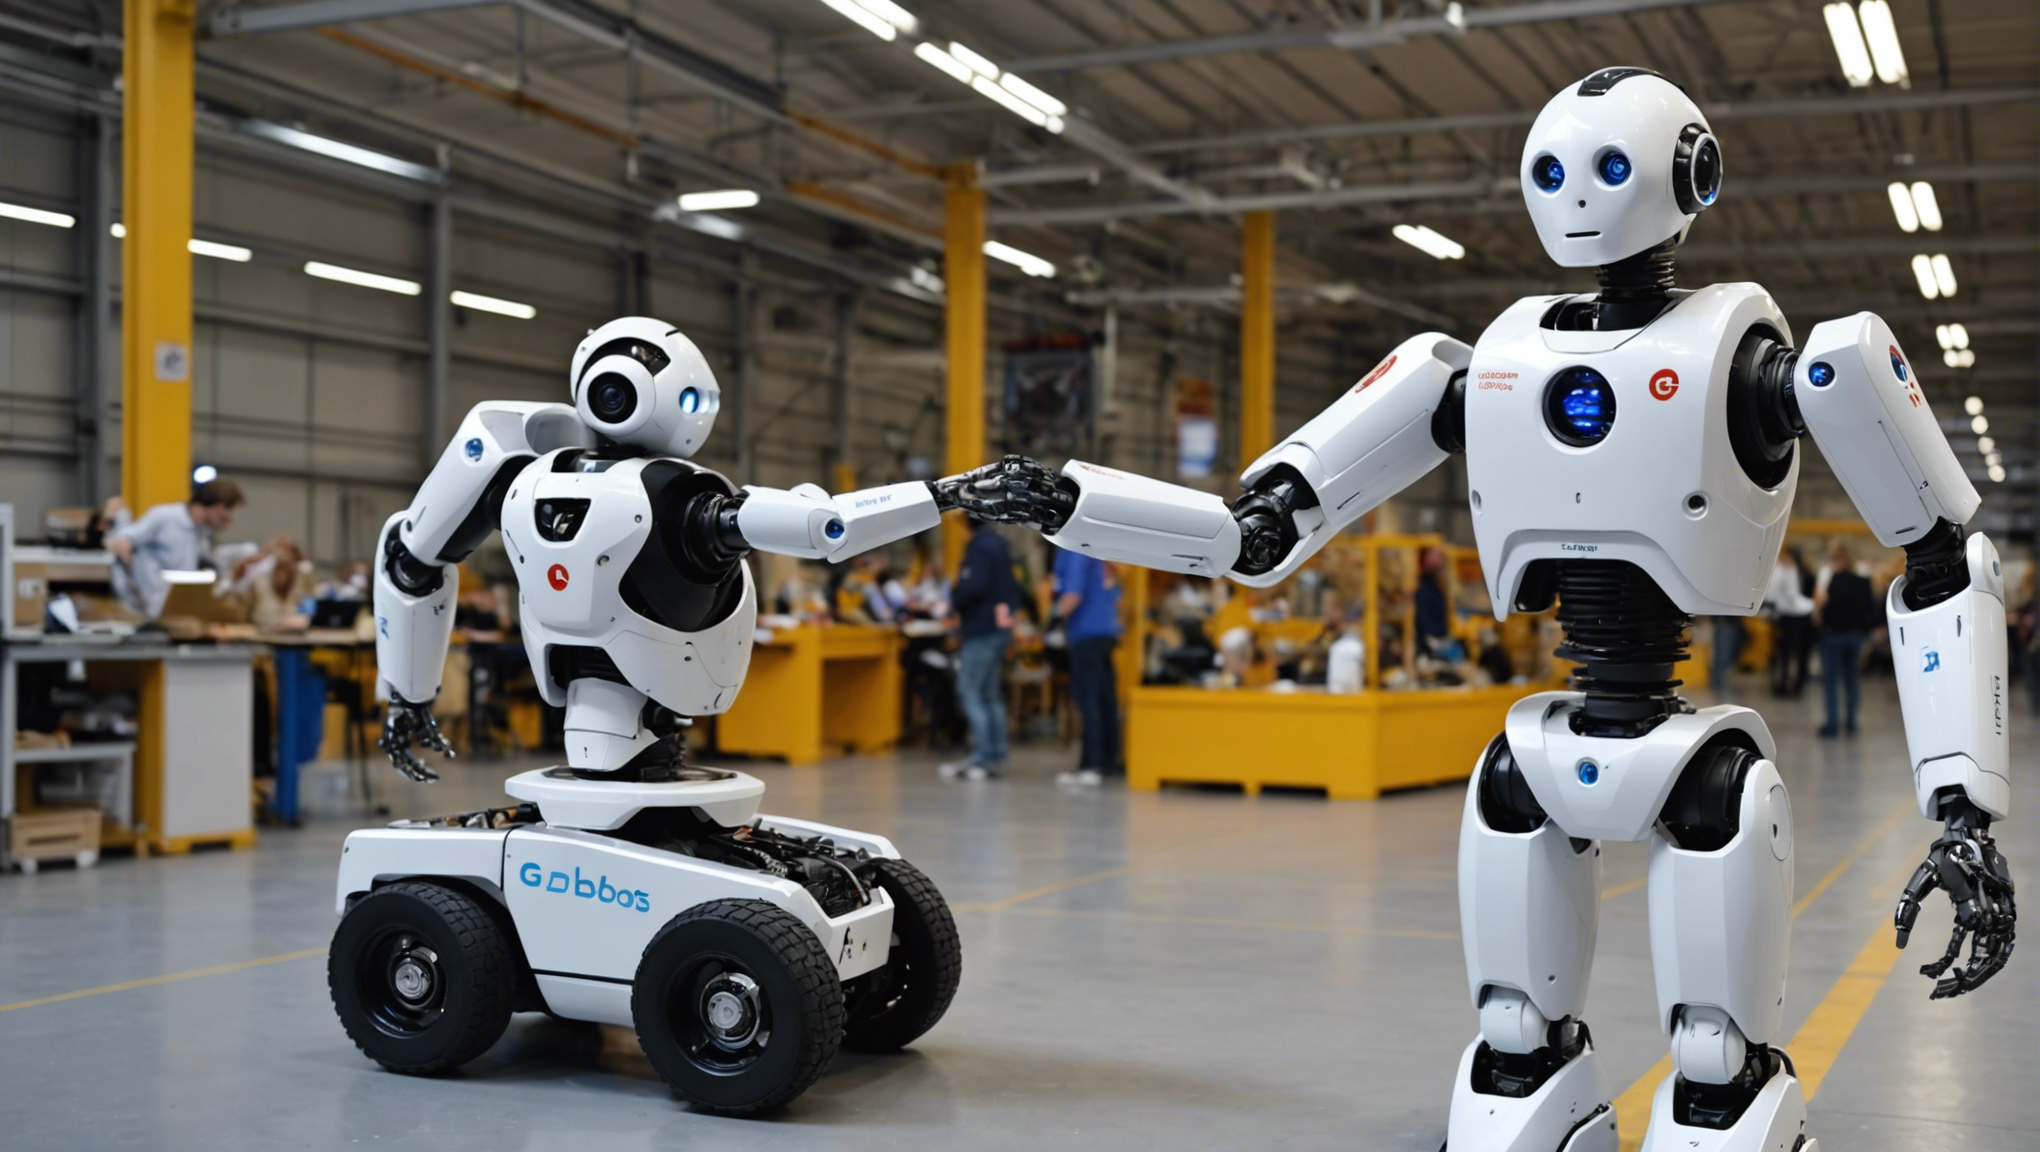 découvrez le blog de génération robots : actualités, tutoriels et ressources sur la robotique pour les professionnels, l'éducation, la recherche et les passionnés.